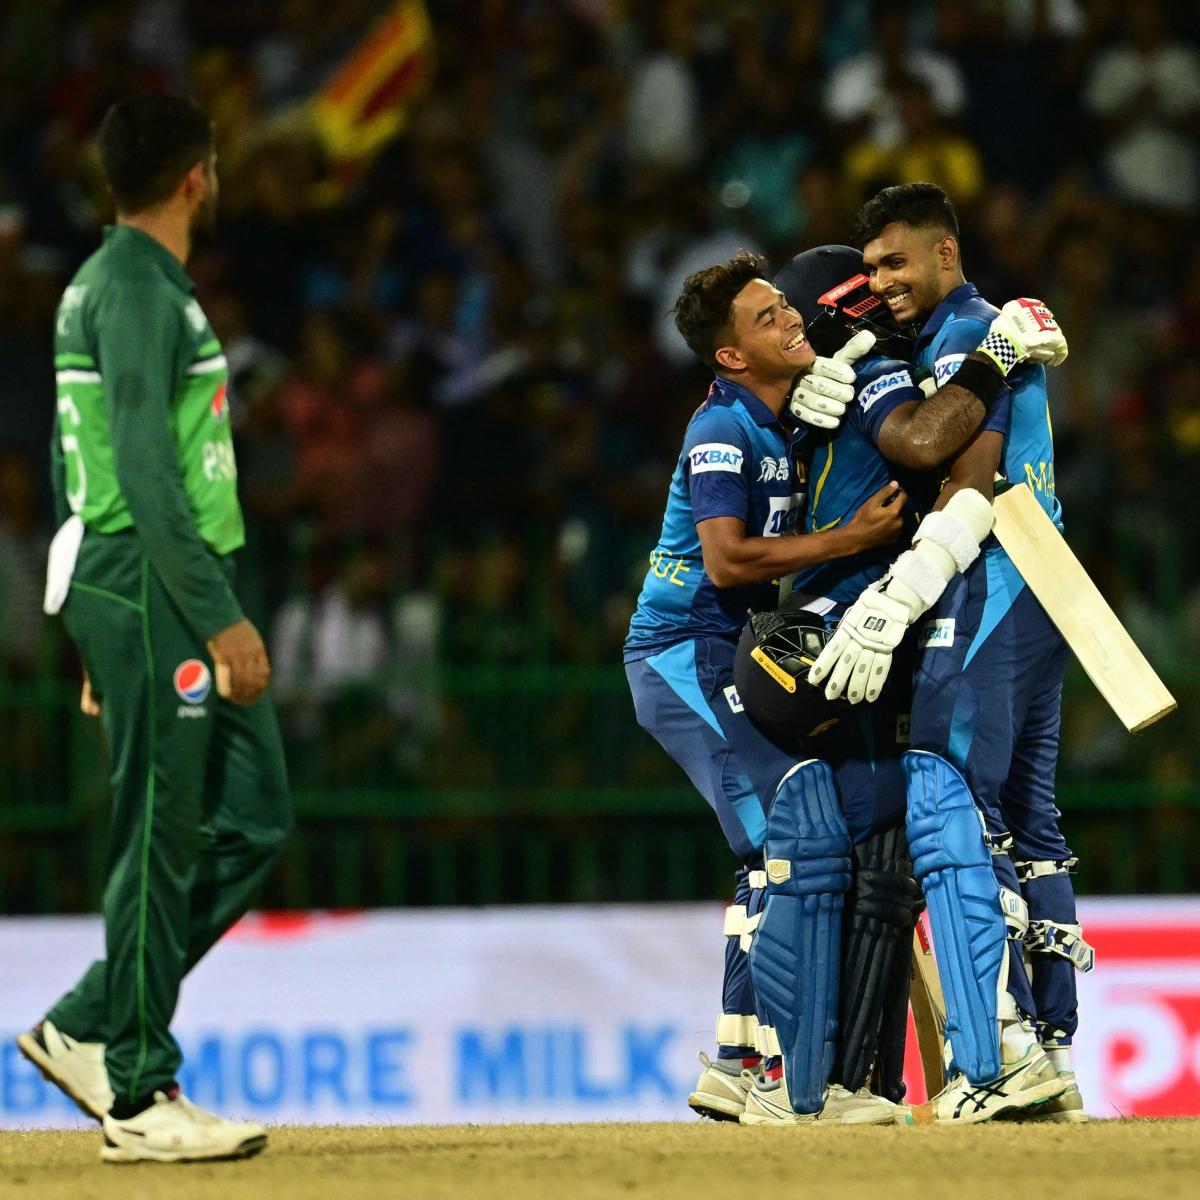 ஆசிய கோப்பை | கடைசி பந்தில் த்ரில் வெற்றி – பாகிஸ்தானை வீழ்த்தி இறுதிப்போட்டிக்கு முன்னேறியது இலங்கை | Asia Cup | Sri Lanka beat Pakistan to reach the final